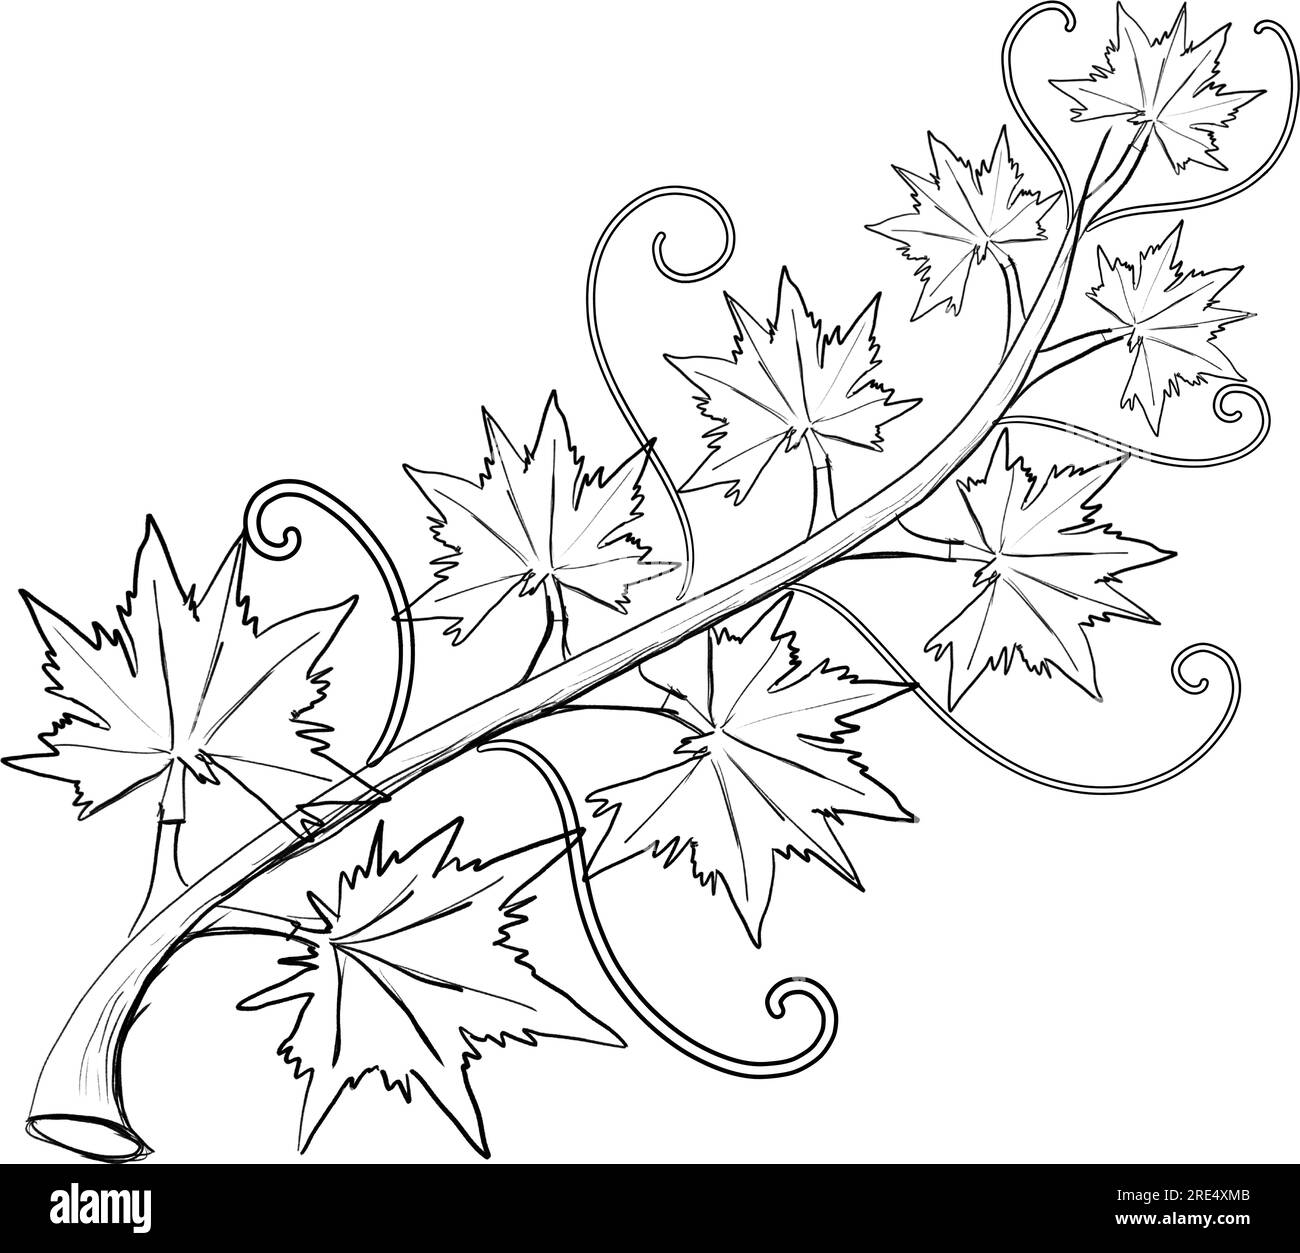 Lignes dessinées à la main de vigne de feuille de citrouille le jour d'Halloween sur un fond blanc, isolez Illustration de Vecteur